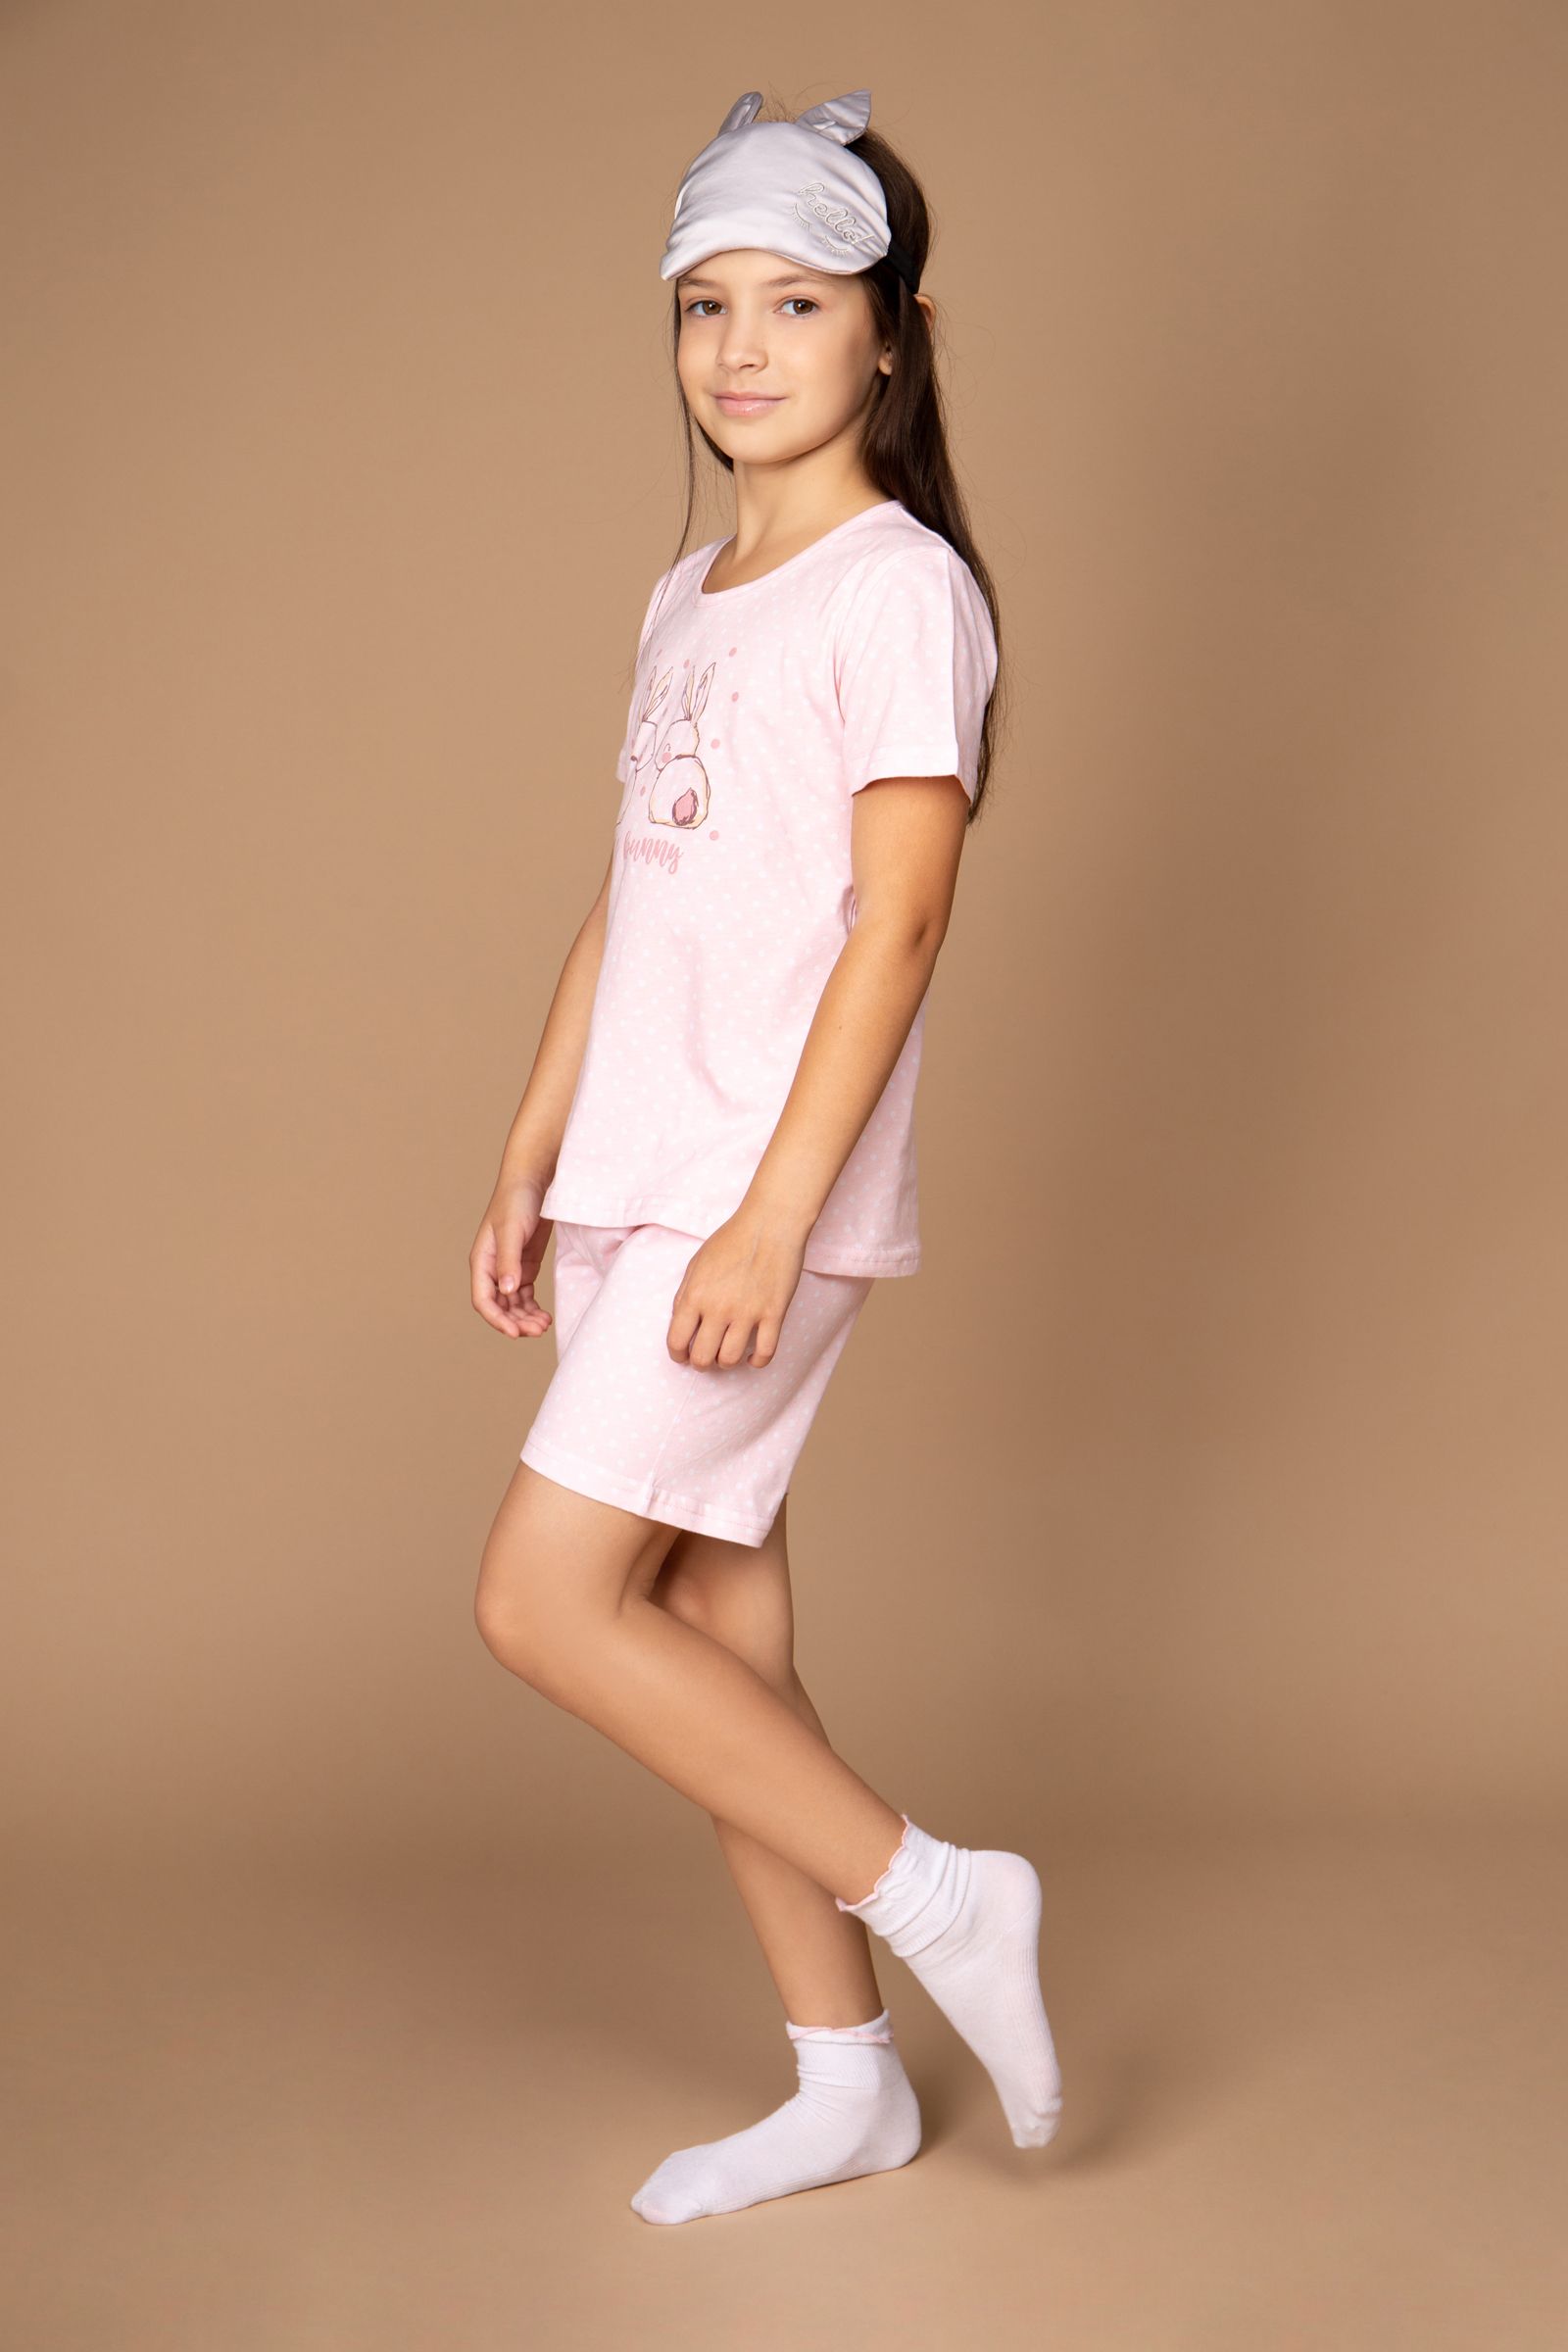 Пижама-ПЖ02-4255 оптом от производителя детской одежды 'Алёна'